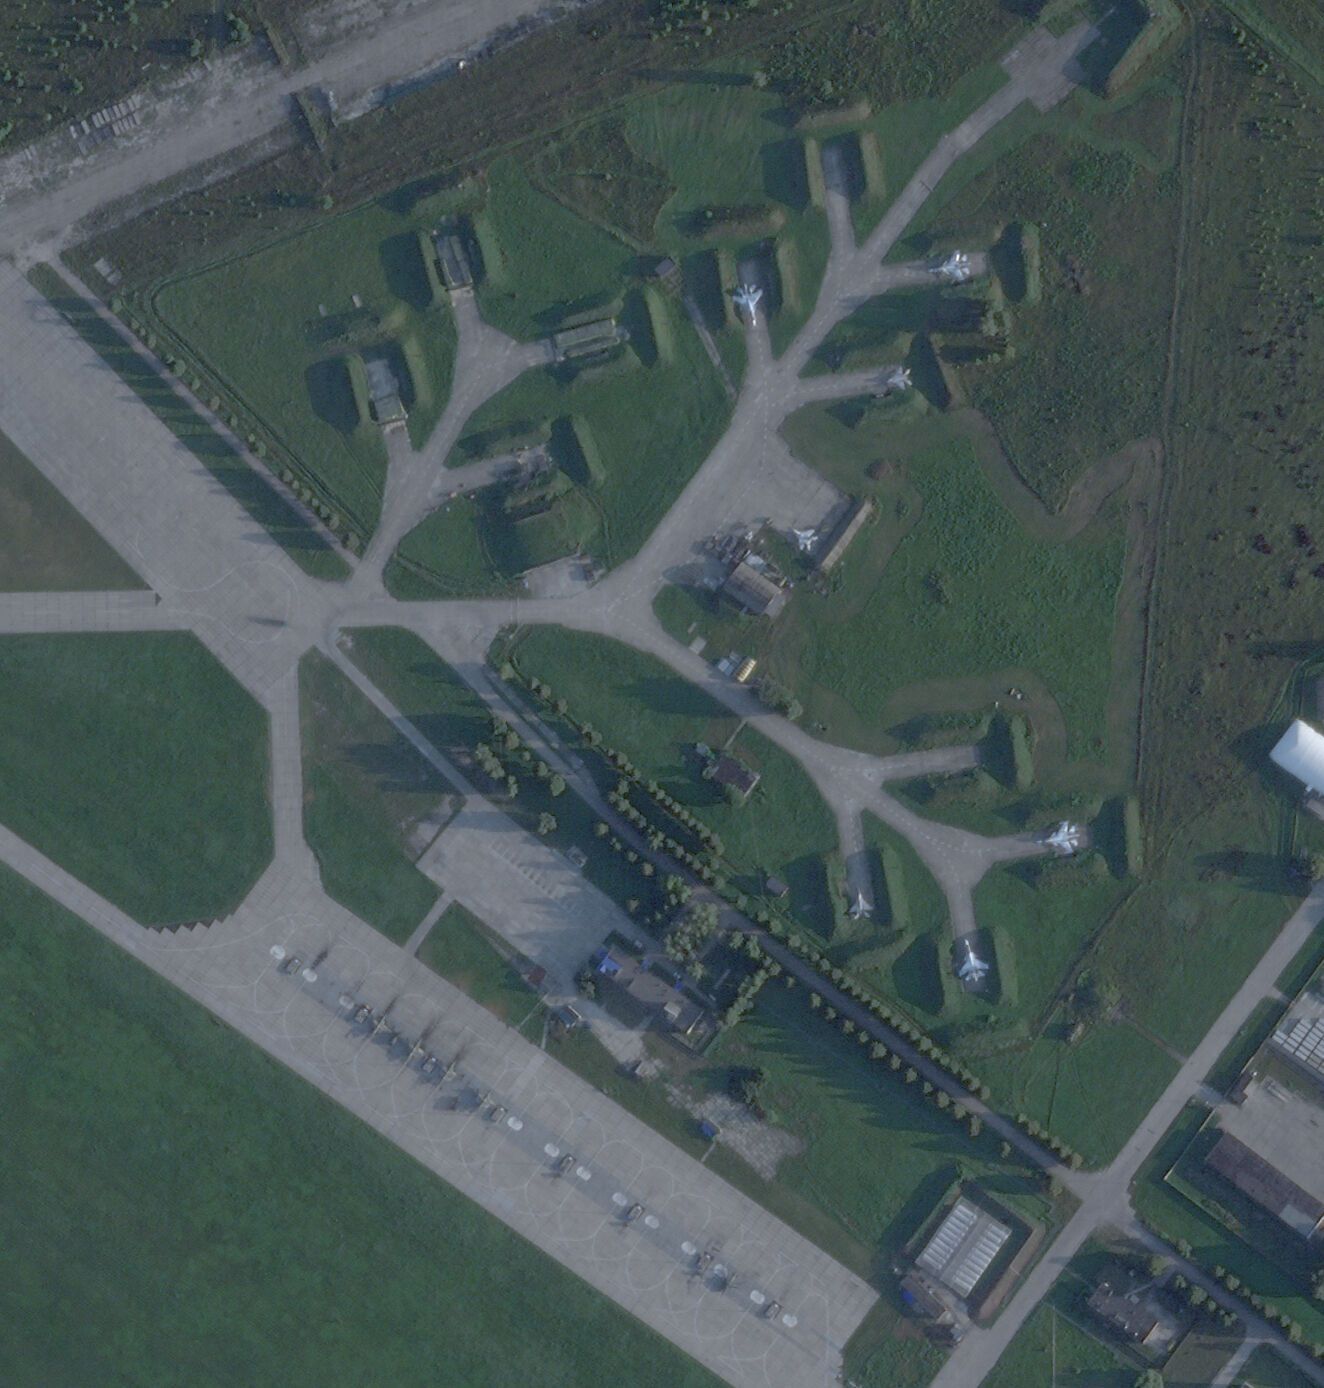 Появились спутниковые снимки аэродрома в Курске после атаки дронов, которую устроила контрразведка СБУ